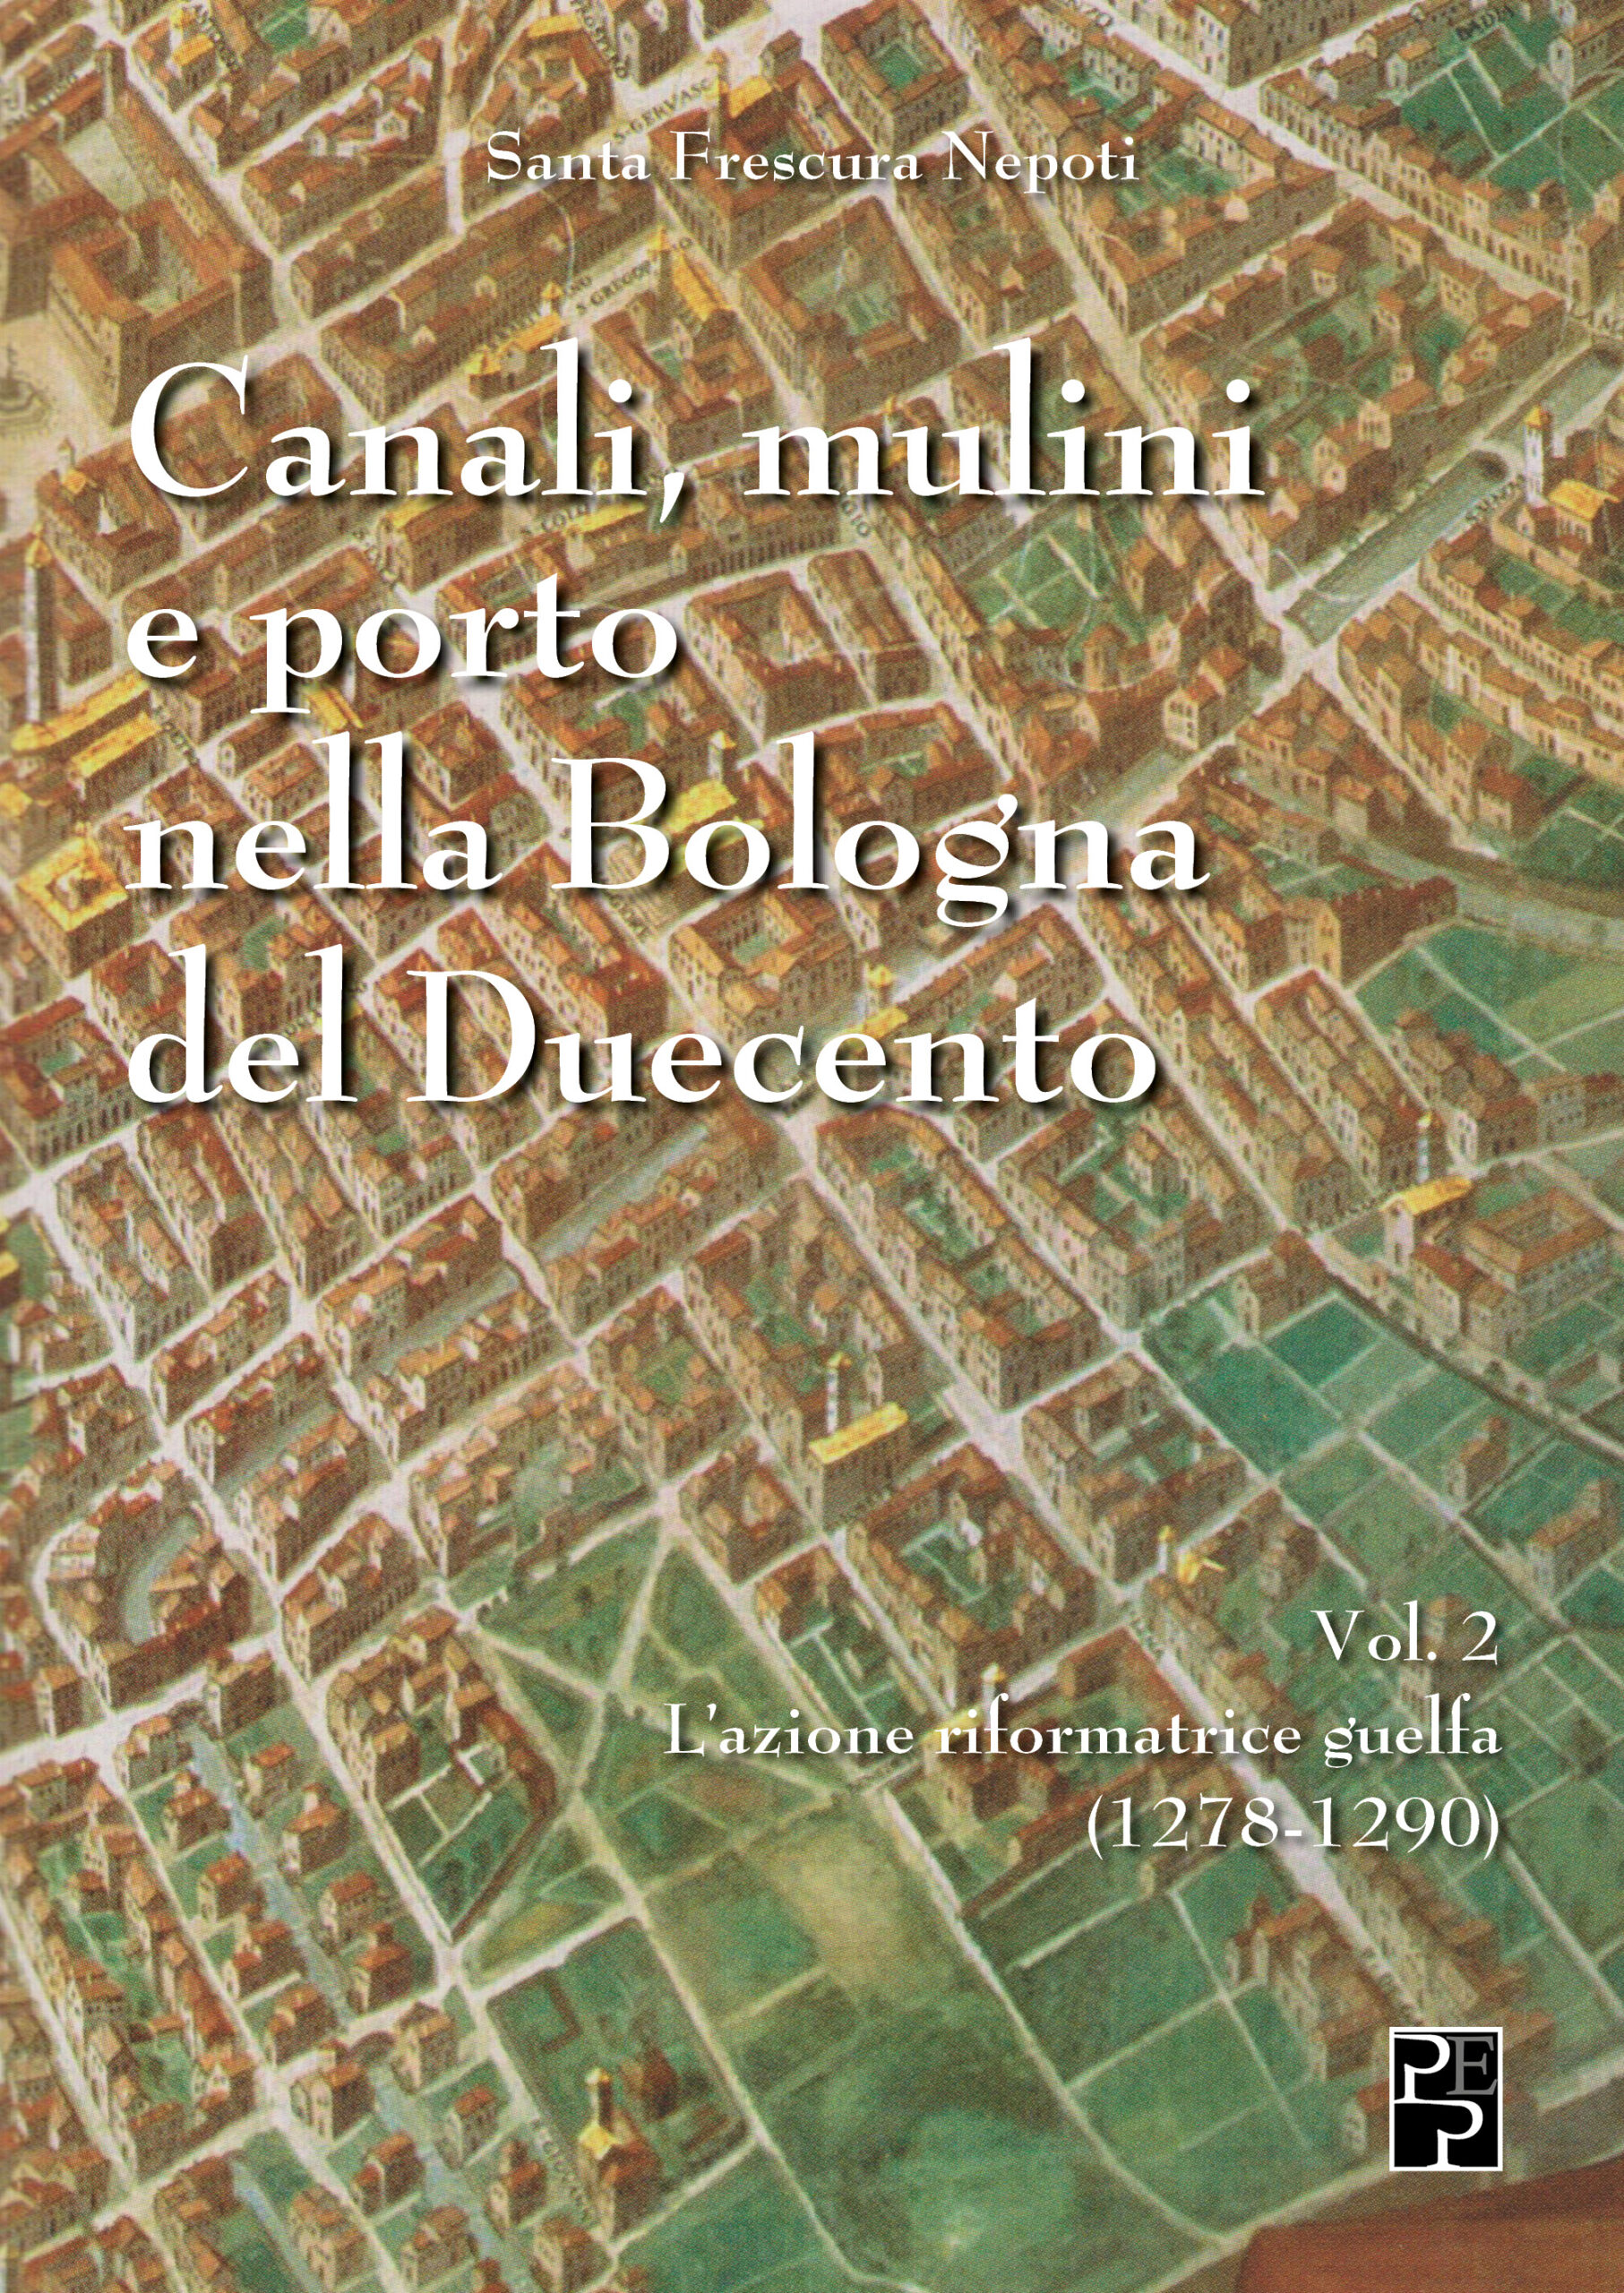 Canali, mulini e porto nella Bologna del Duecento Vol 2